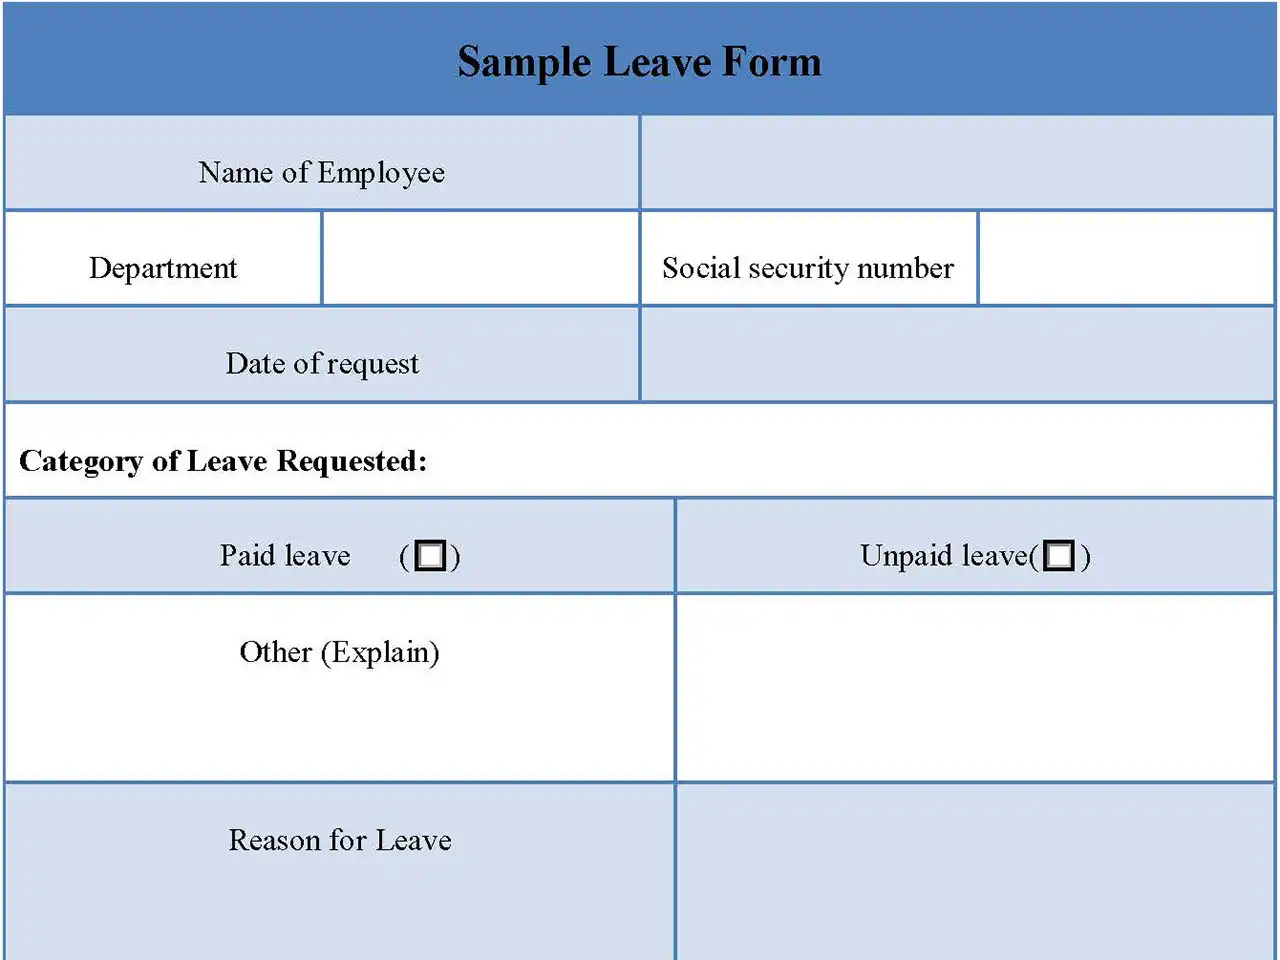 Sample Leave Form